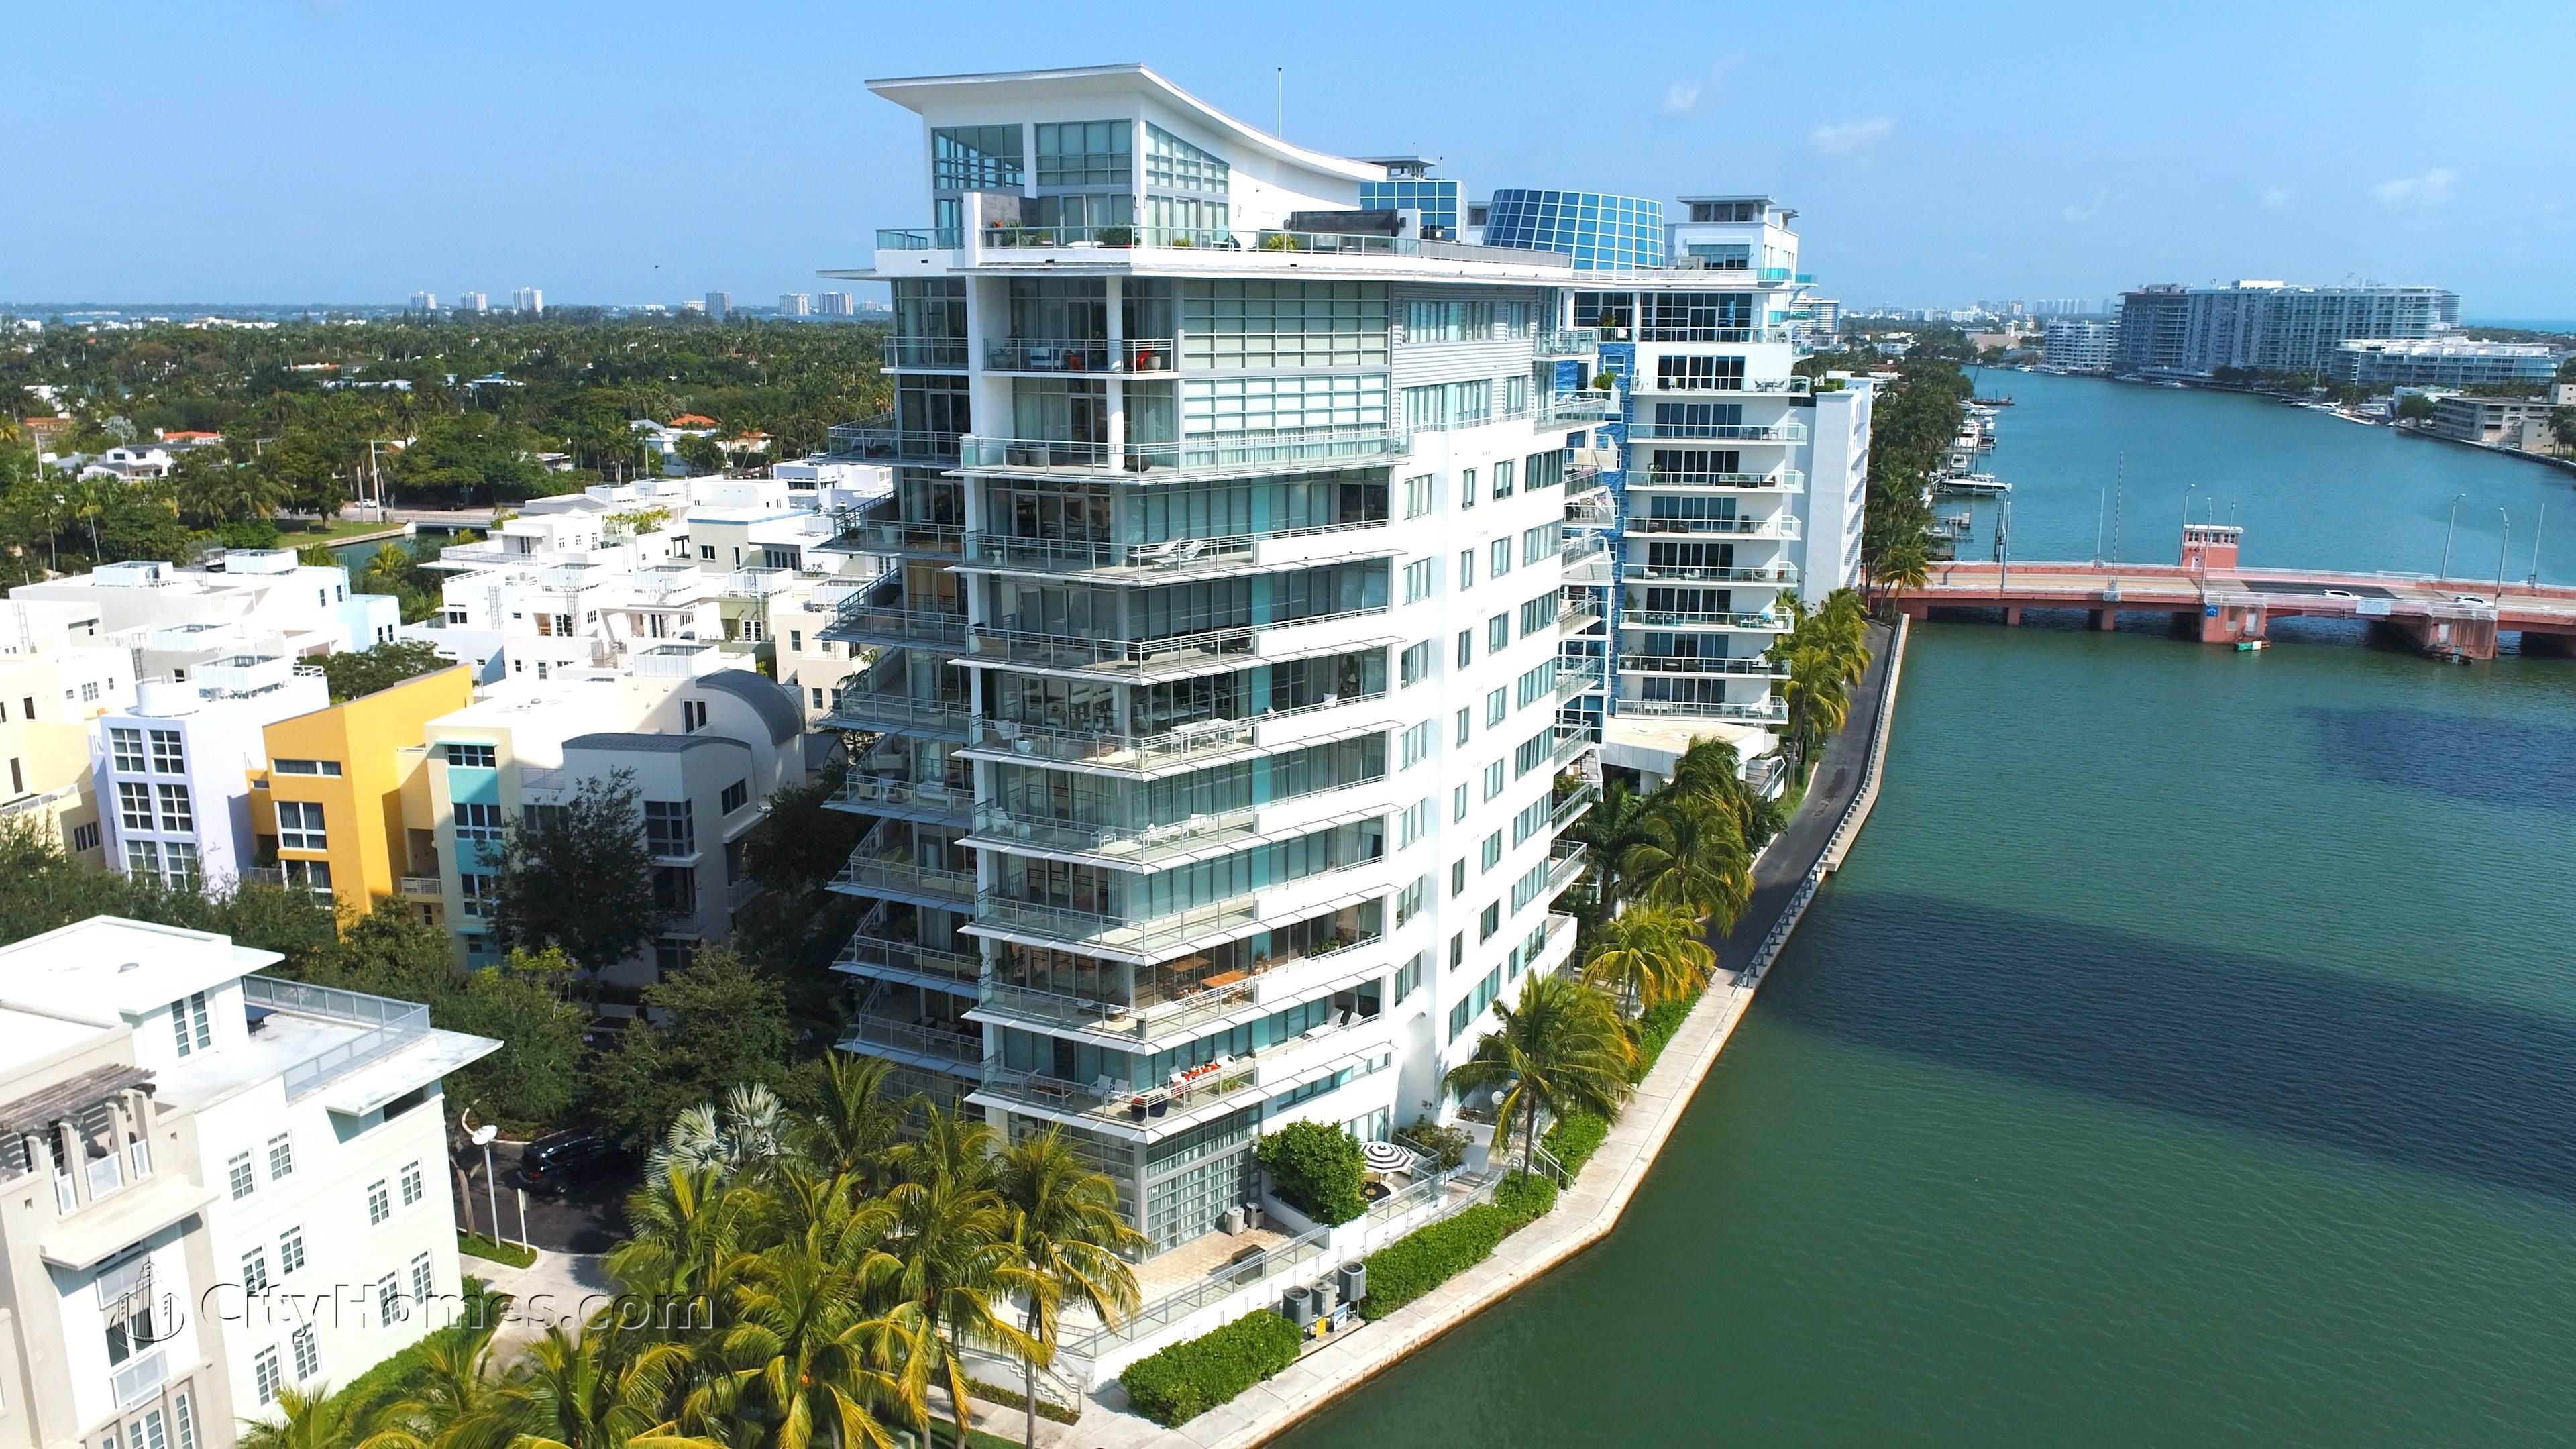 AQUA ALLISON ISLAND - GORLIN BUILDING building at 6101 Aqua Avenue, Miami Beach, FL 33141